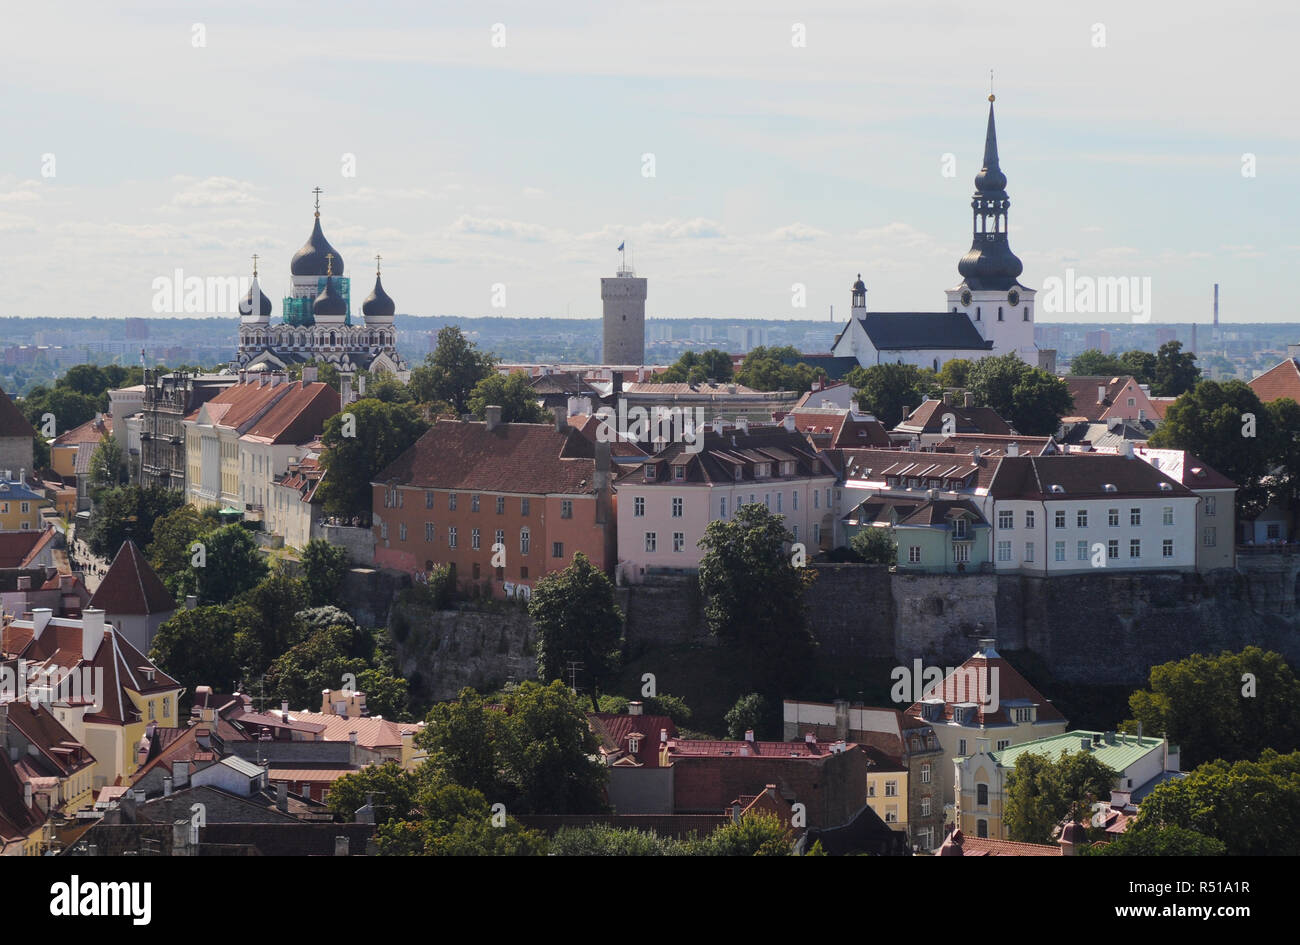 Panoramic view of Toompea district, Tallinn, Estonia Stock Photo